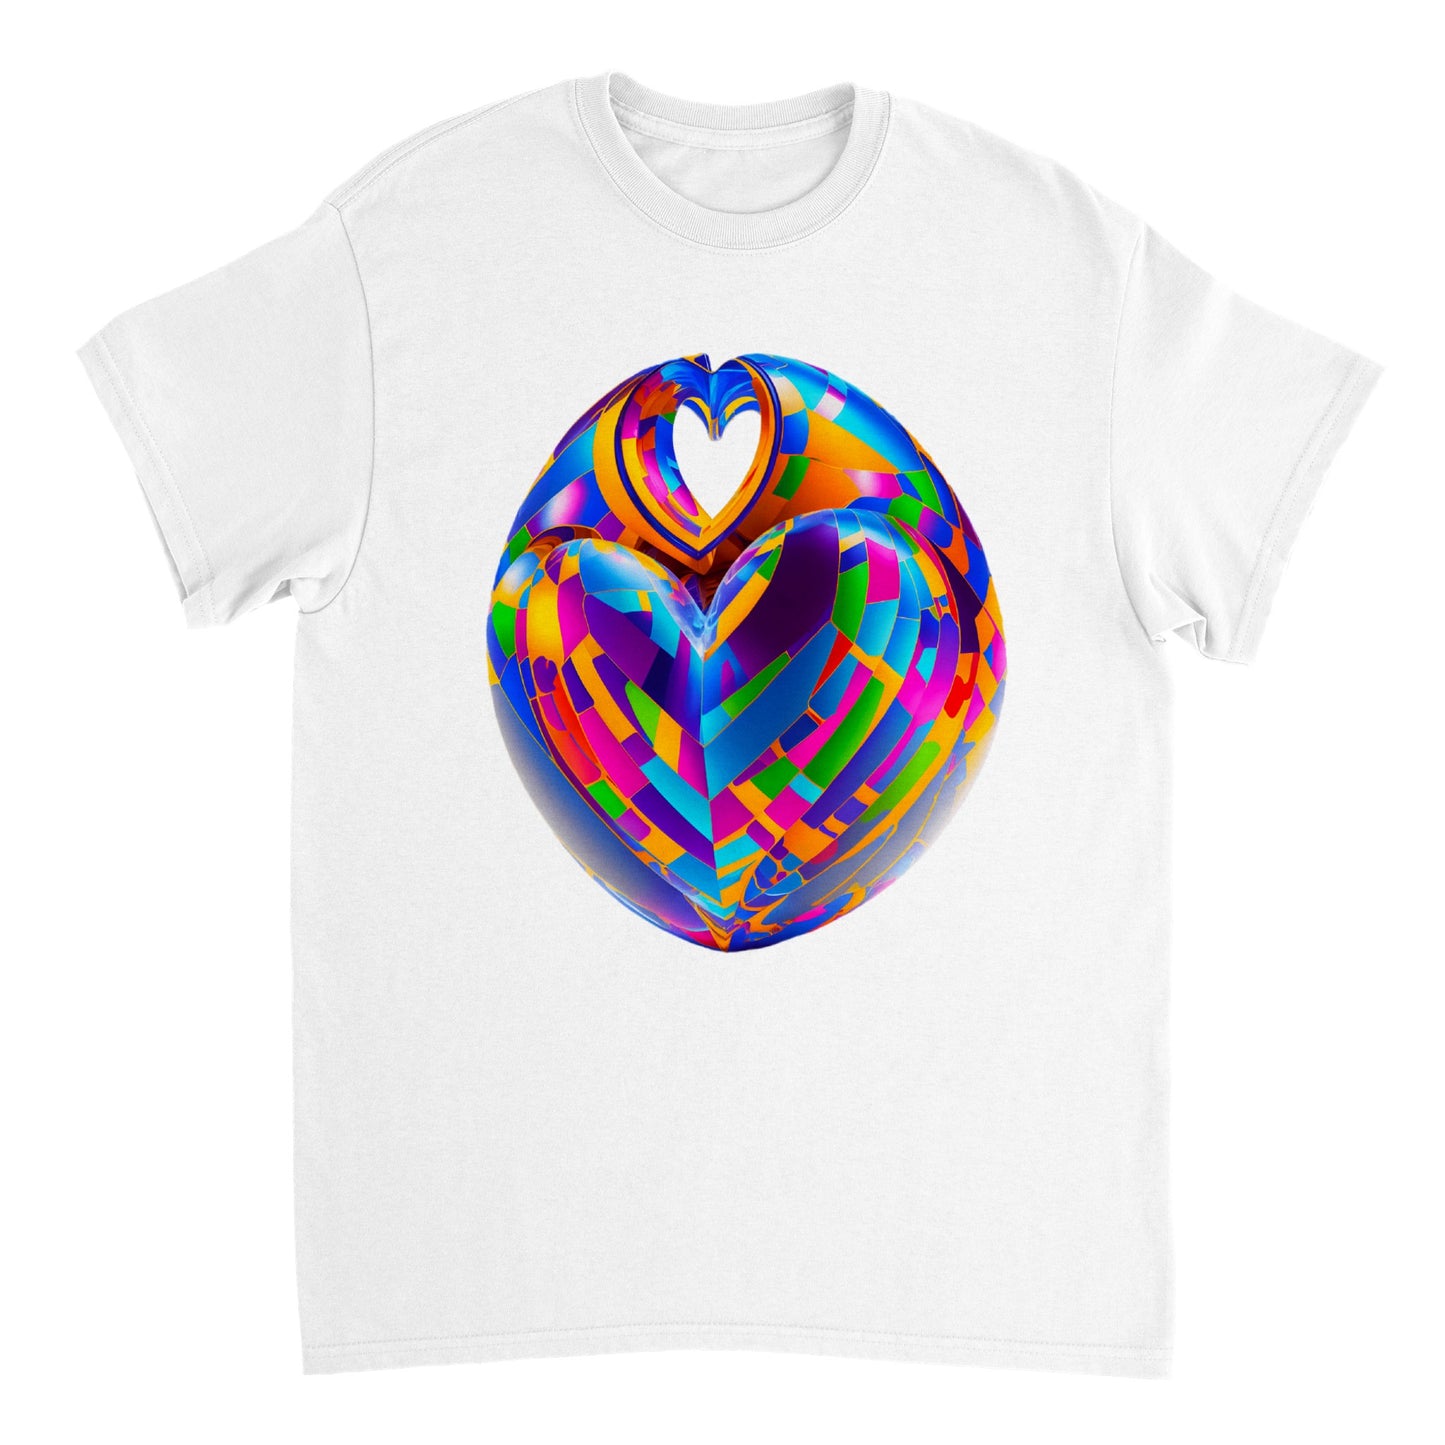 Love Heart - Heavyweight Unisex Crewneck T-shirt 43